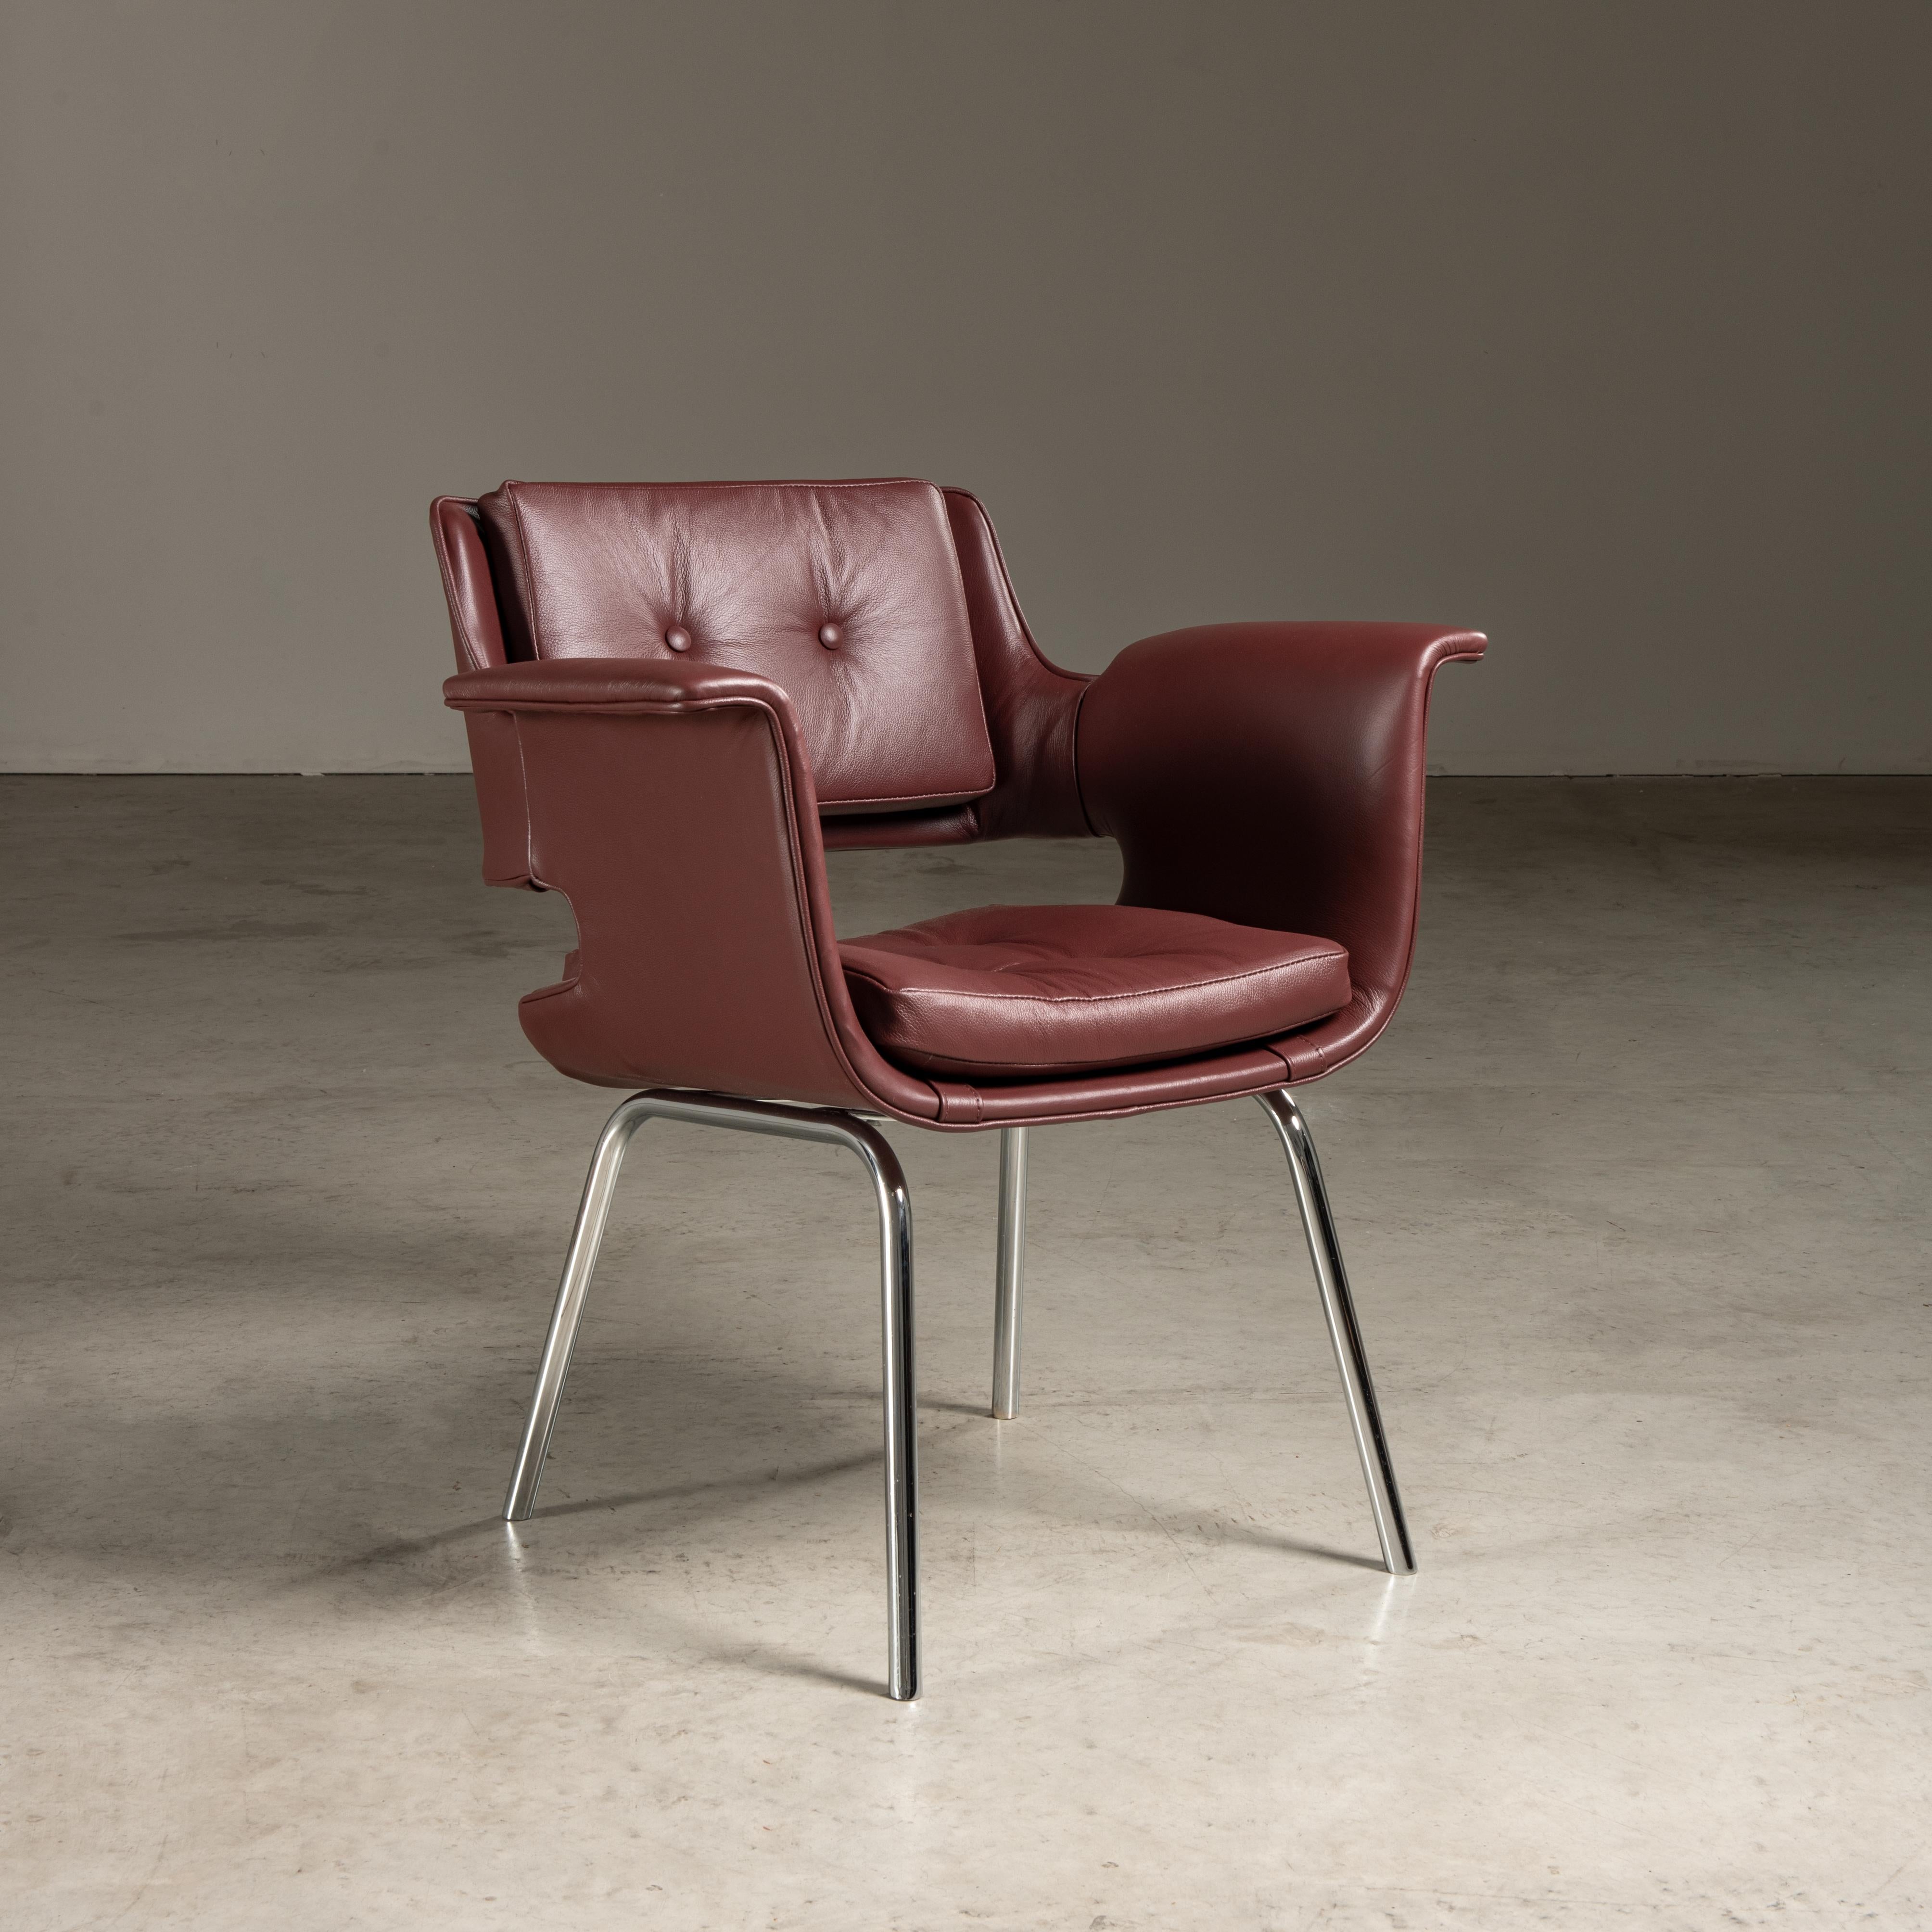 Cette chaise est un exemple du design brésilien du milieu du XXe siècle, attribué à Carlo Fongaro, un artiste talentueux mais méconnu. Son travail reflète les tendances modernistes de l'époque, mariant l'artisanat traditionnel à l'éthique du design